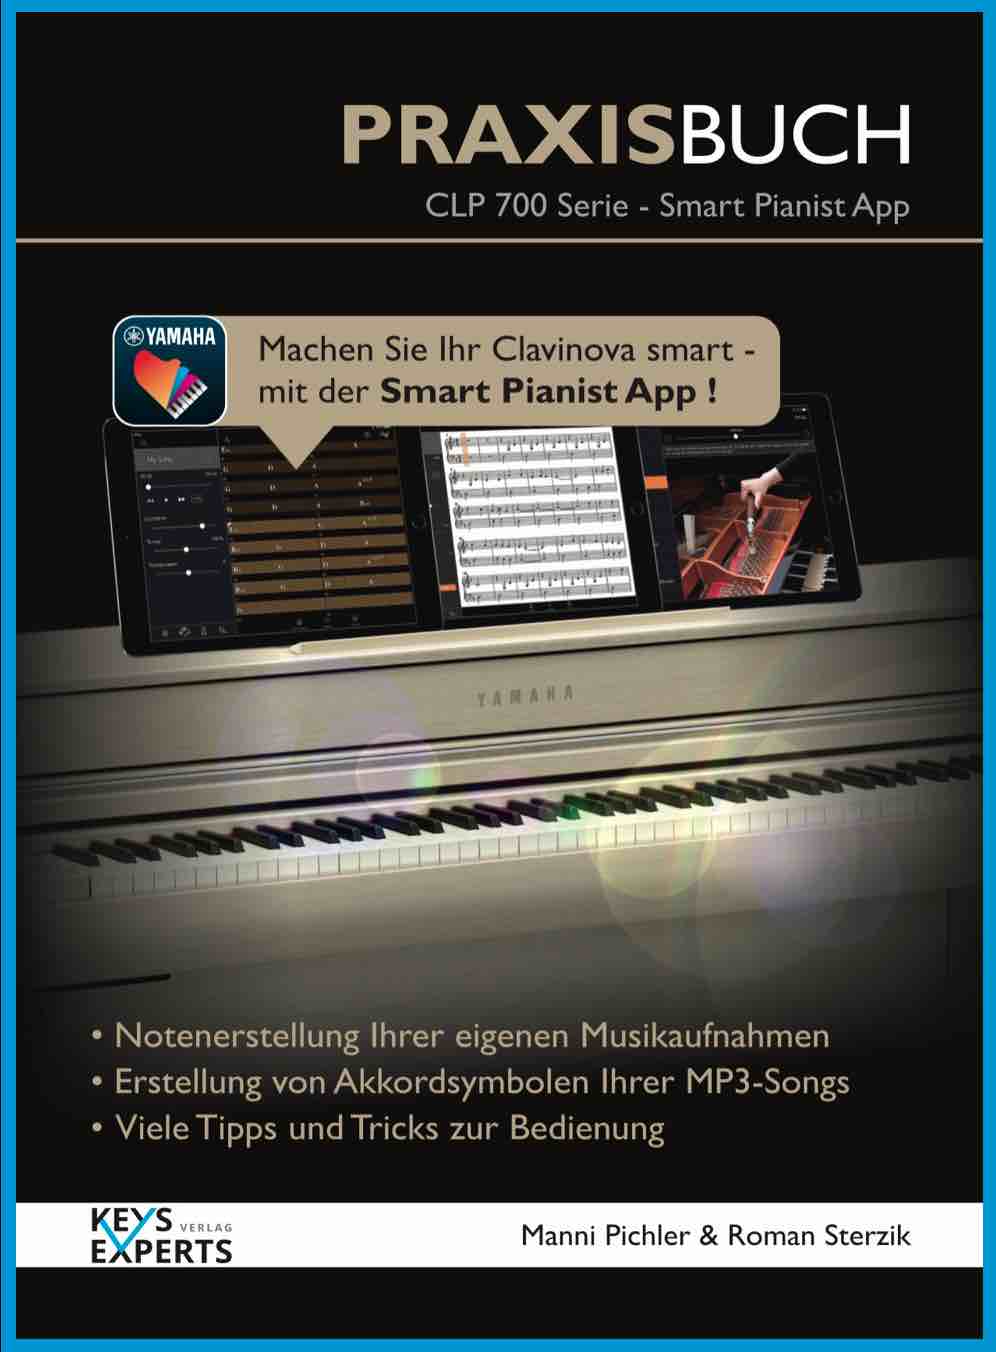 CLP-700 Smart Pianist Praxisbuch1 